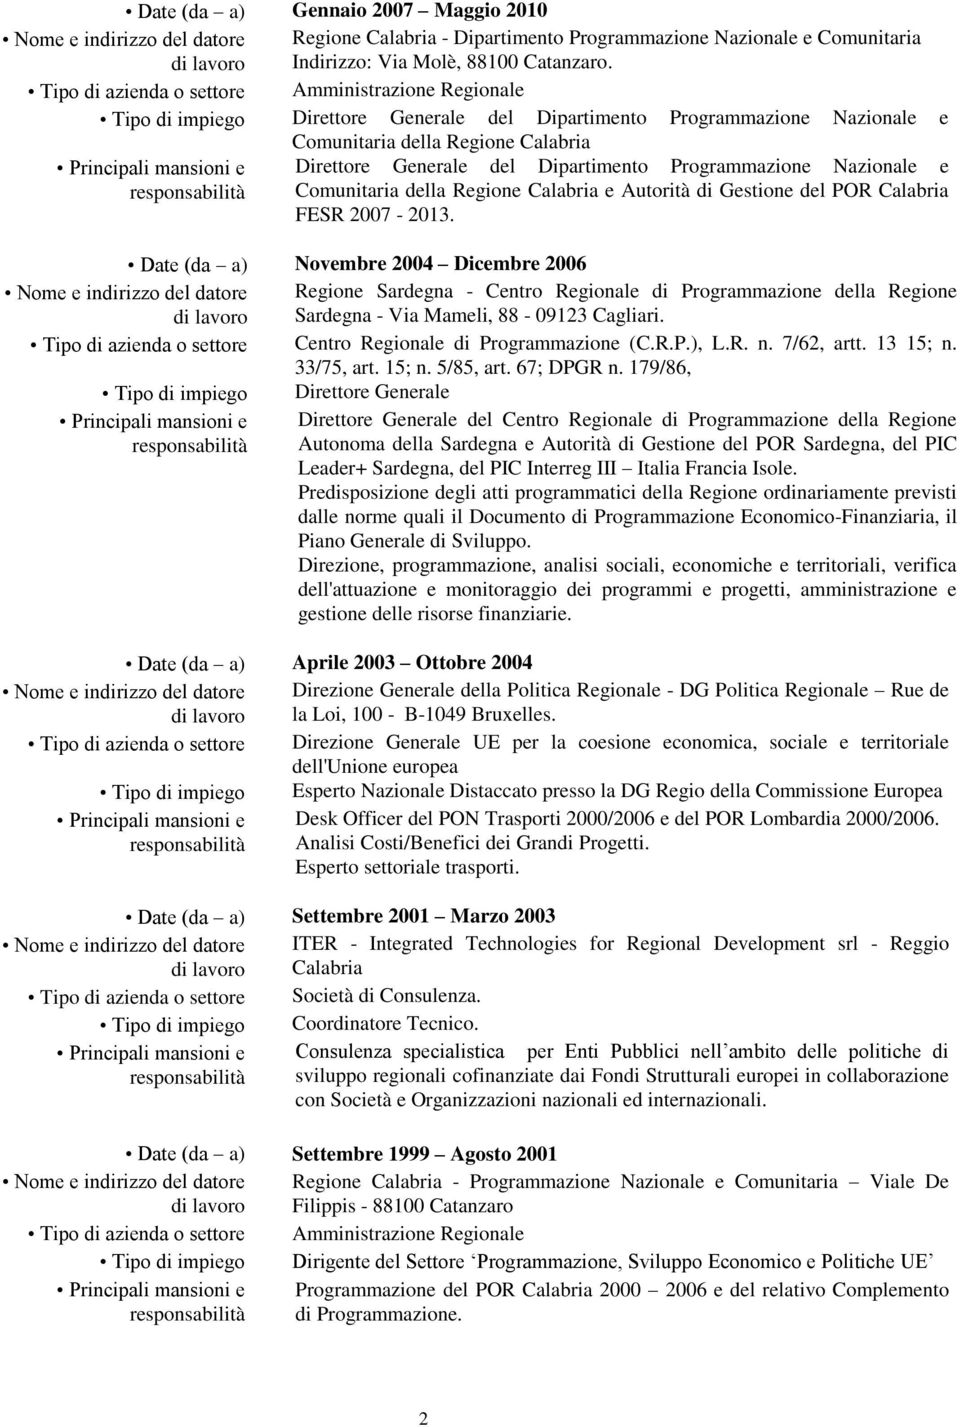 Dipartimento Programmazione Nazionale e Comunitaria della Regione Calabria e Autorità di Gestione del POR Calabria FESR 2007-2013.